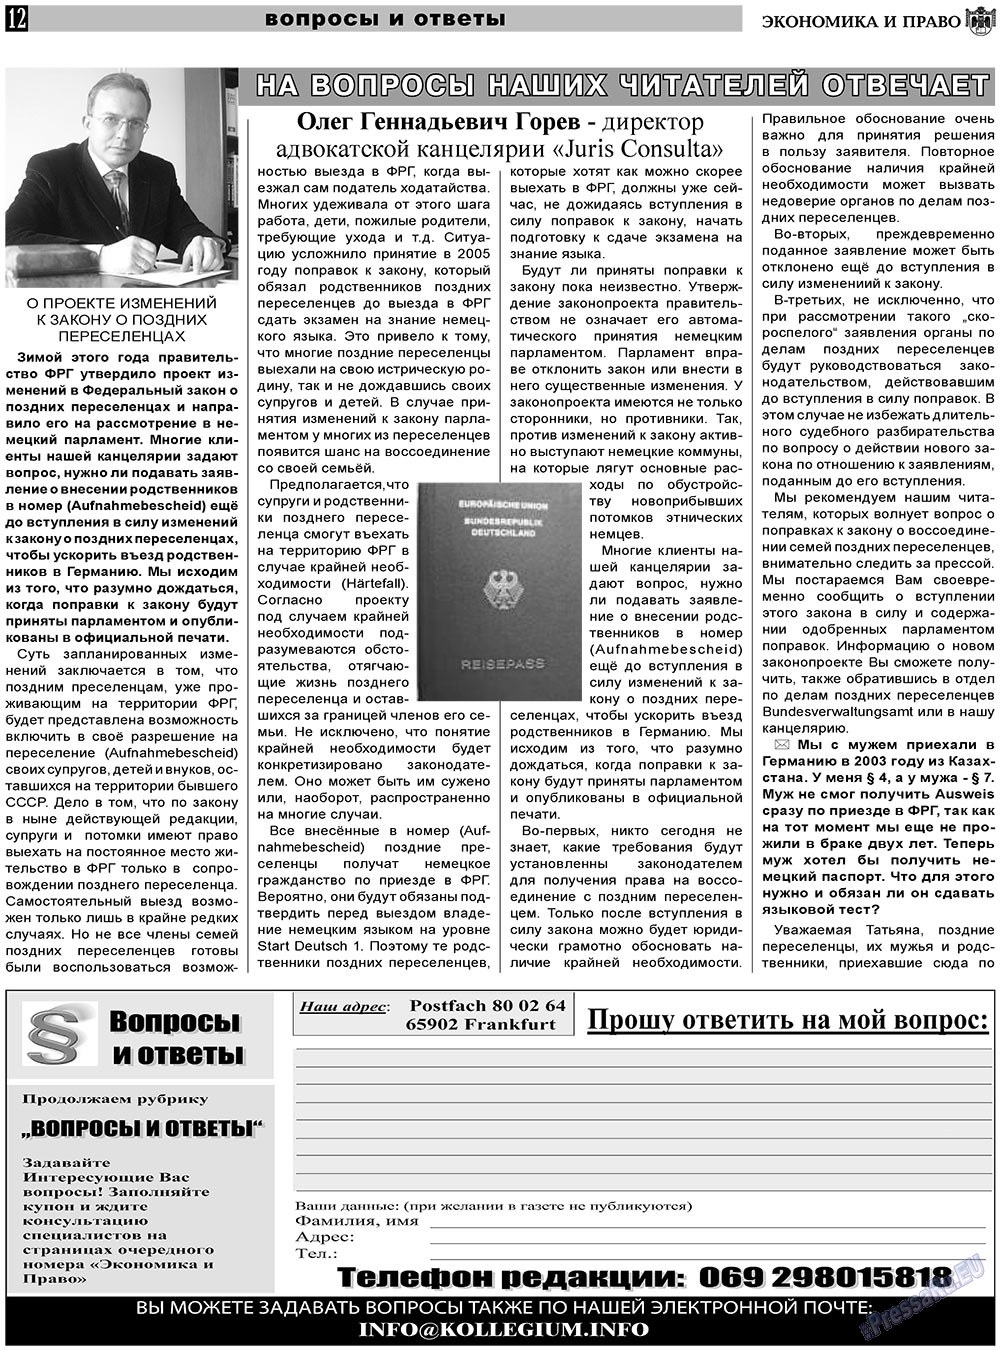 Экономика и право, газета. 2011 №6 стр.12